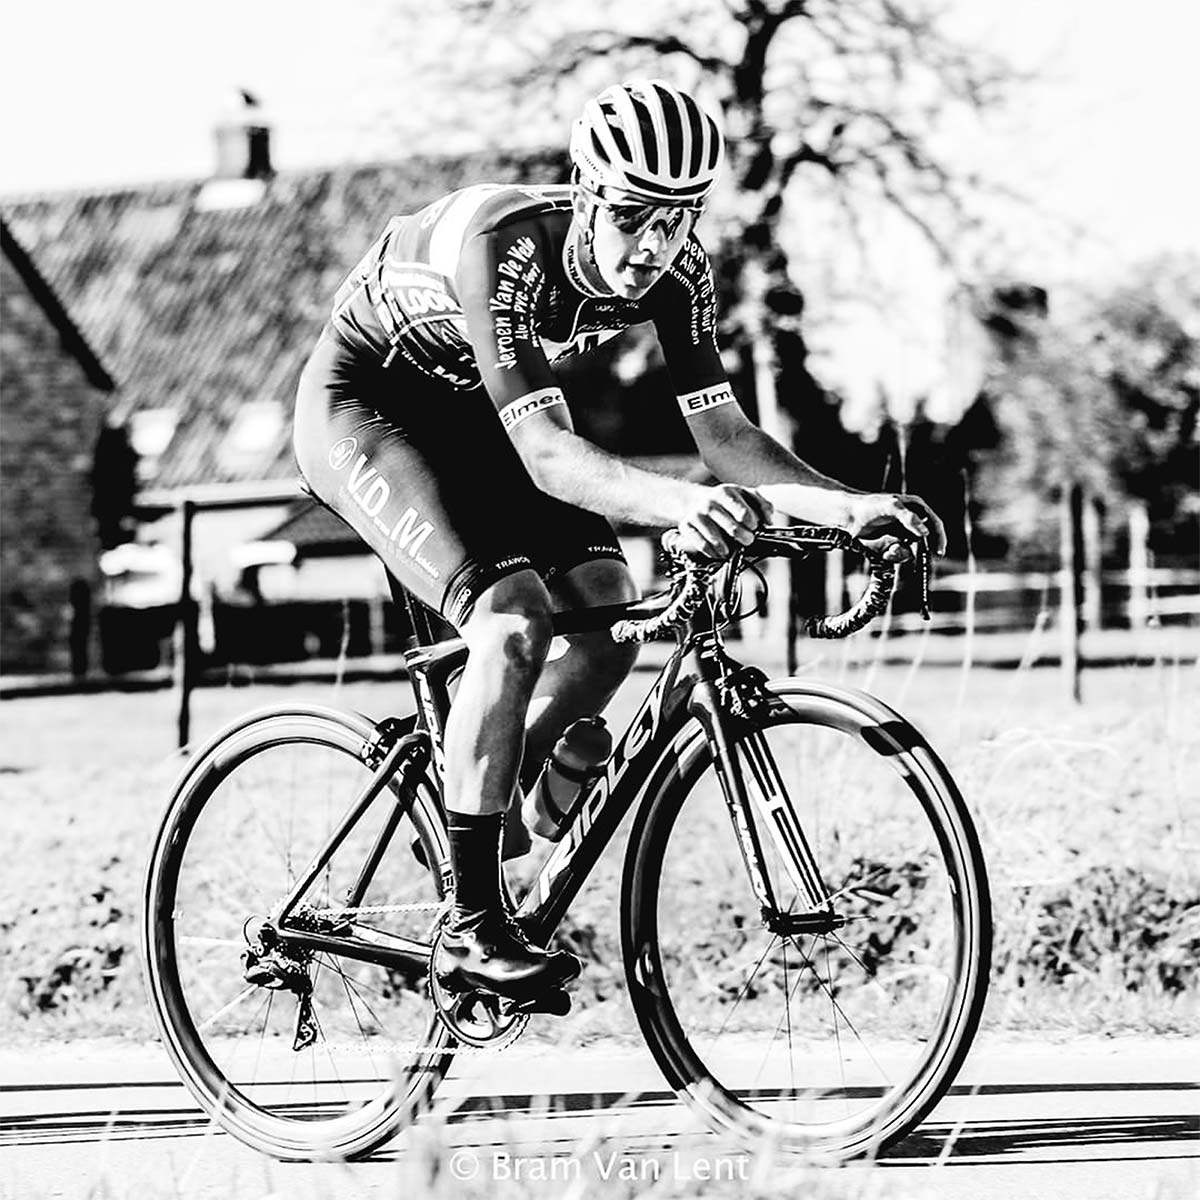 En TodoMountainBike: El ciclista belga Niels de Vriendt muere de un infarto durante la disputa de la Wortegem-Petegem